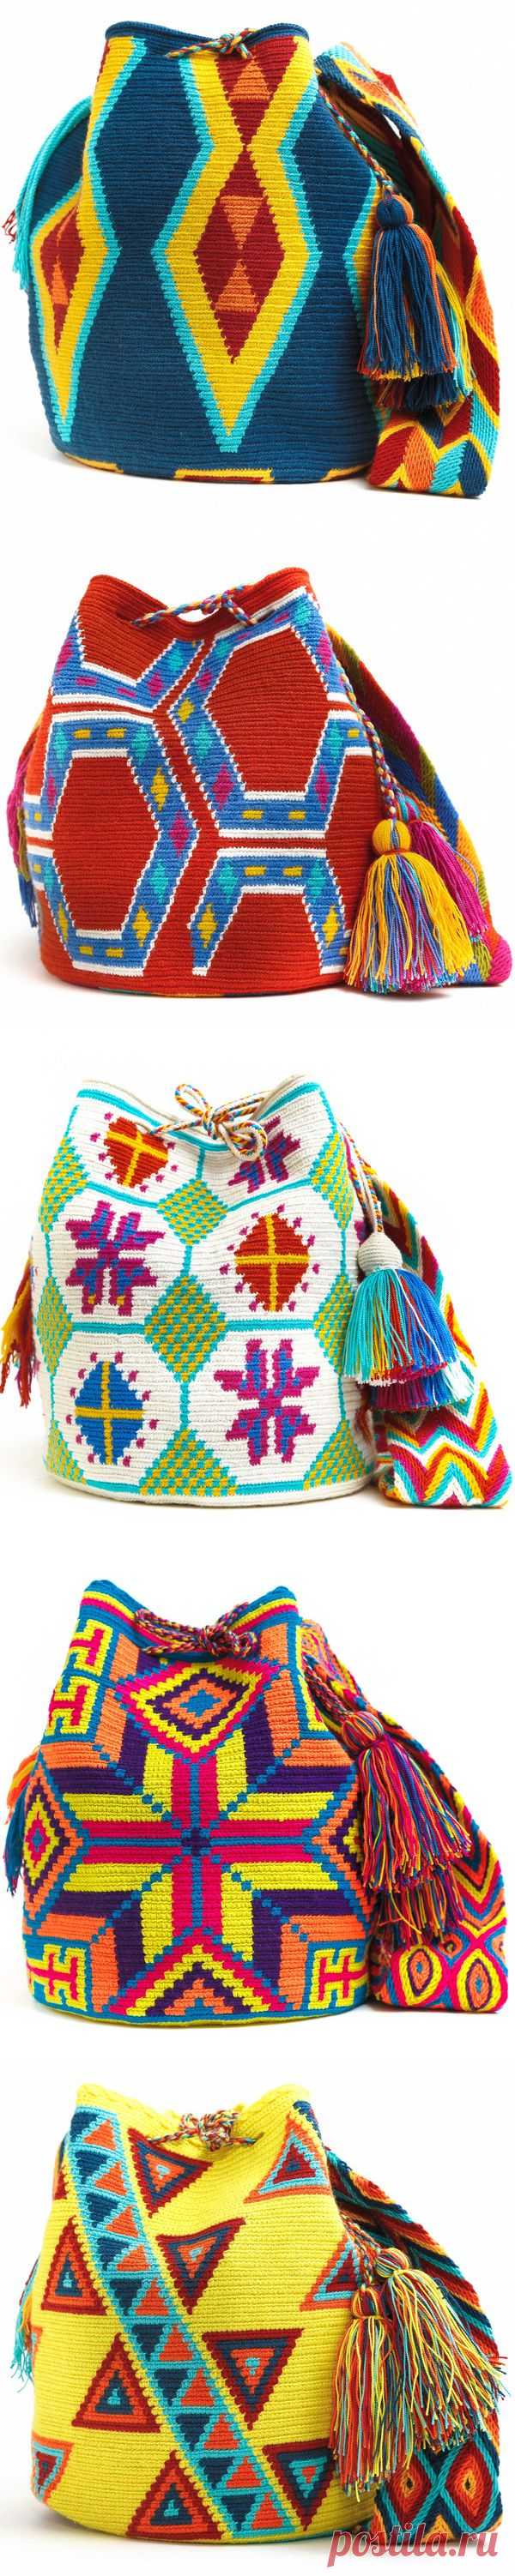 Этнические сумки ("Мочила" - сумка из Колумбии).